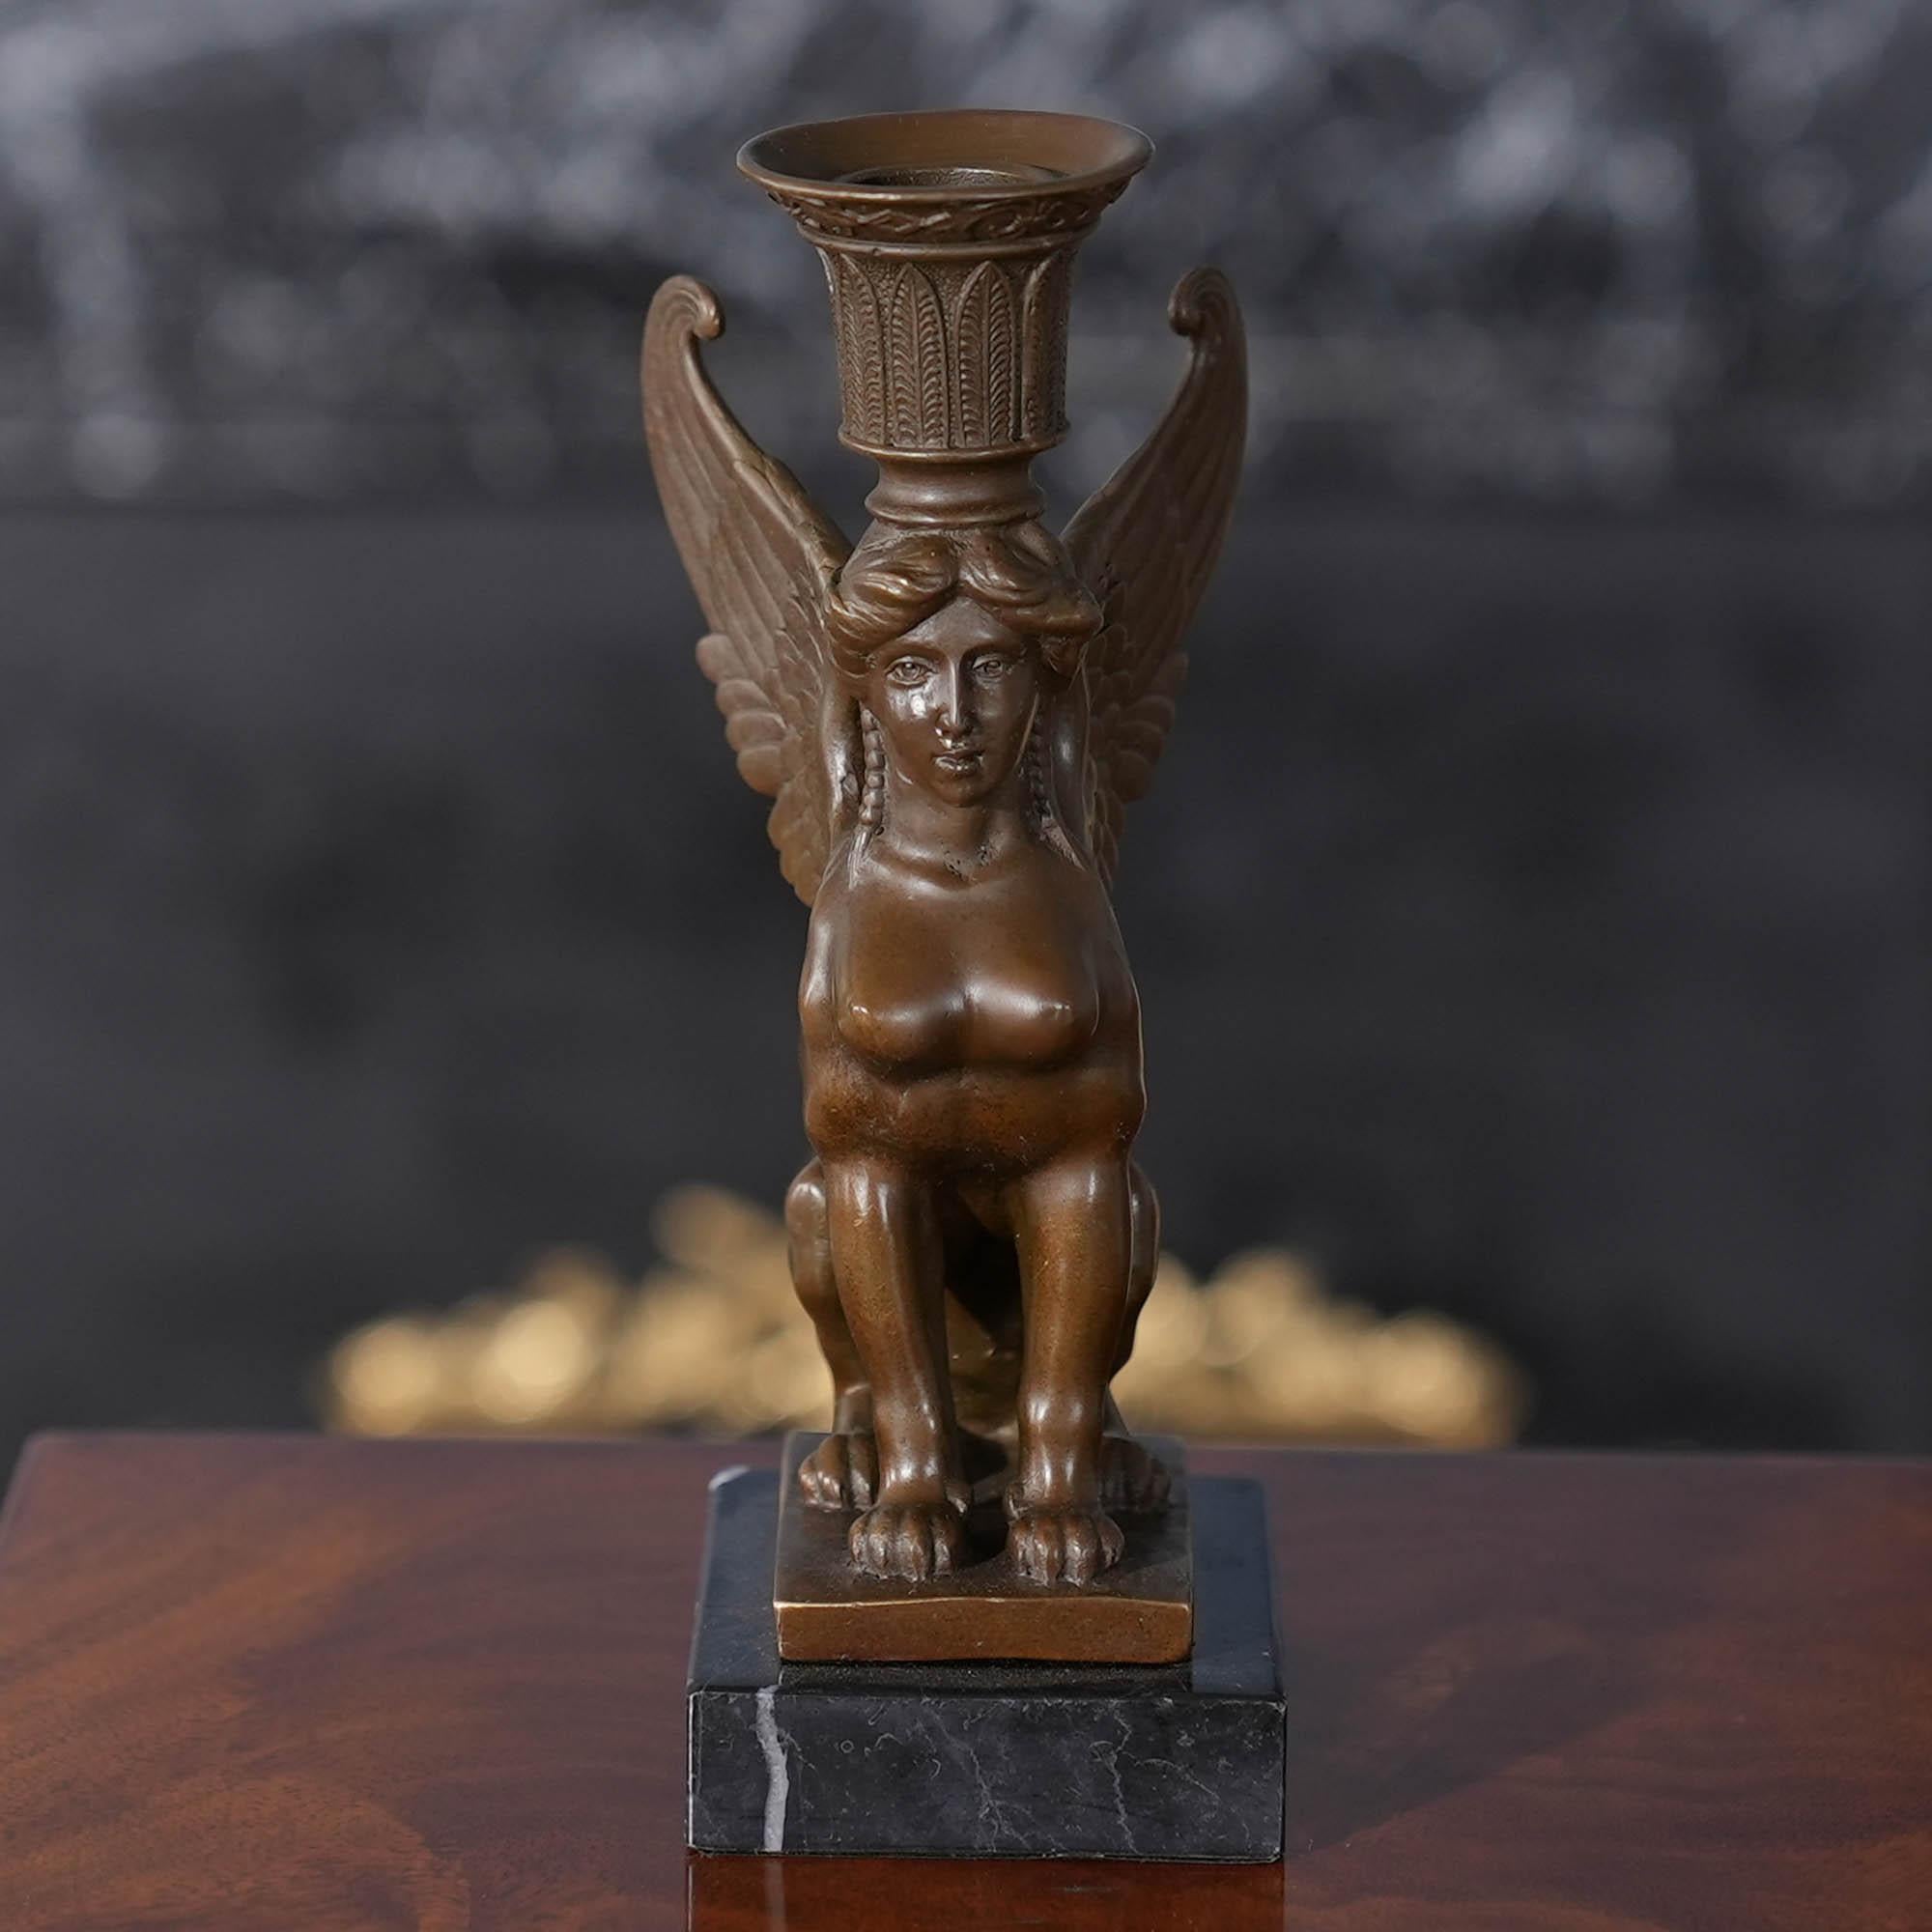 Gracieux même lorsqu'il est immobile, le bougeoir Sphinx en bronze sur socle en marbre est un ajout saisissant à tout décor. Utilisant les méthodes traditionnelles de moulage à la cire perdue, la statue du sphinx en bronze est ornée de détails